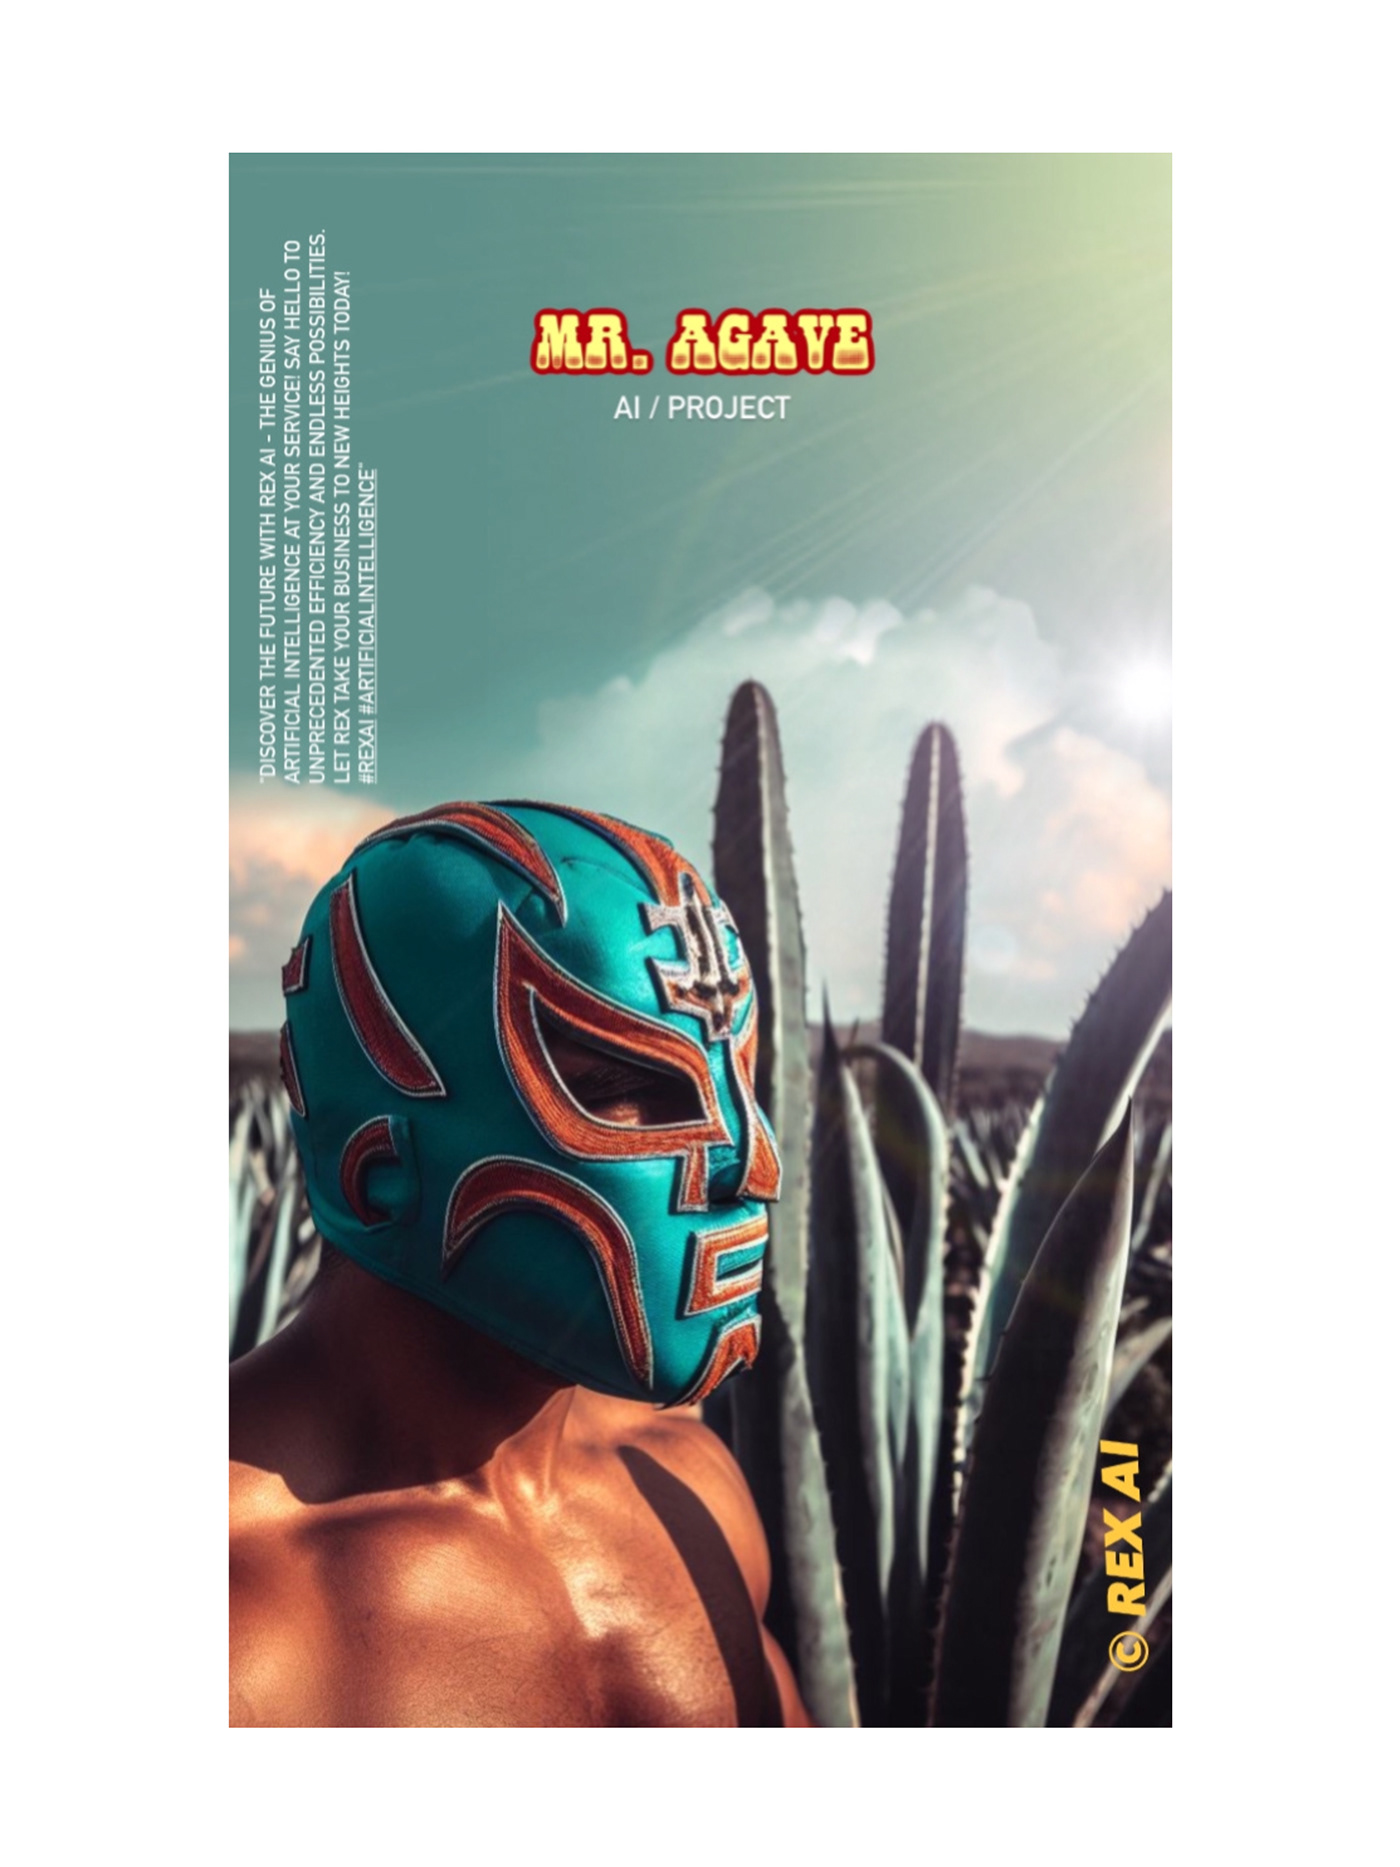 lucha libre luchador ai Inteligencia Artificial artificial intelligence mexico oaxaca nacho rex silva mezcal